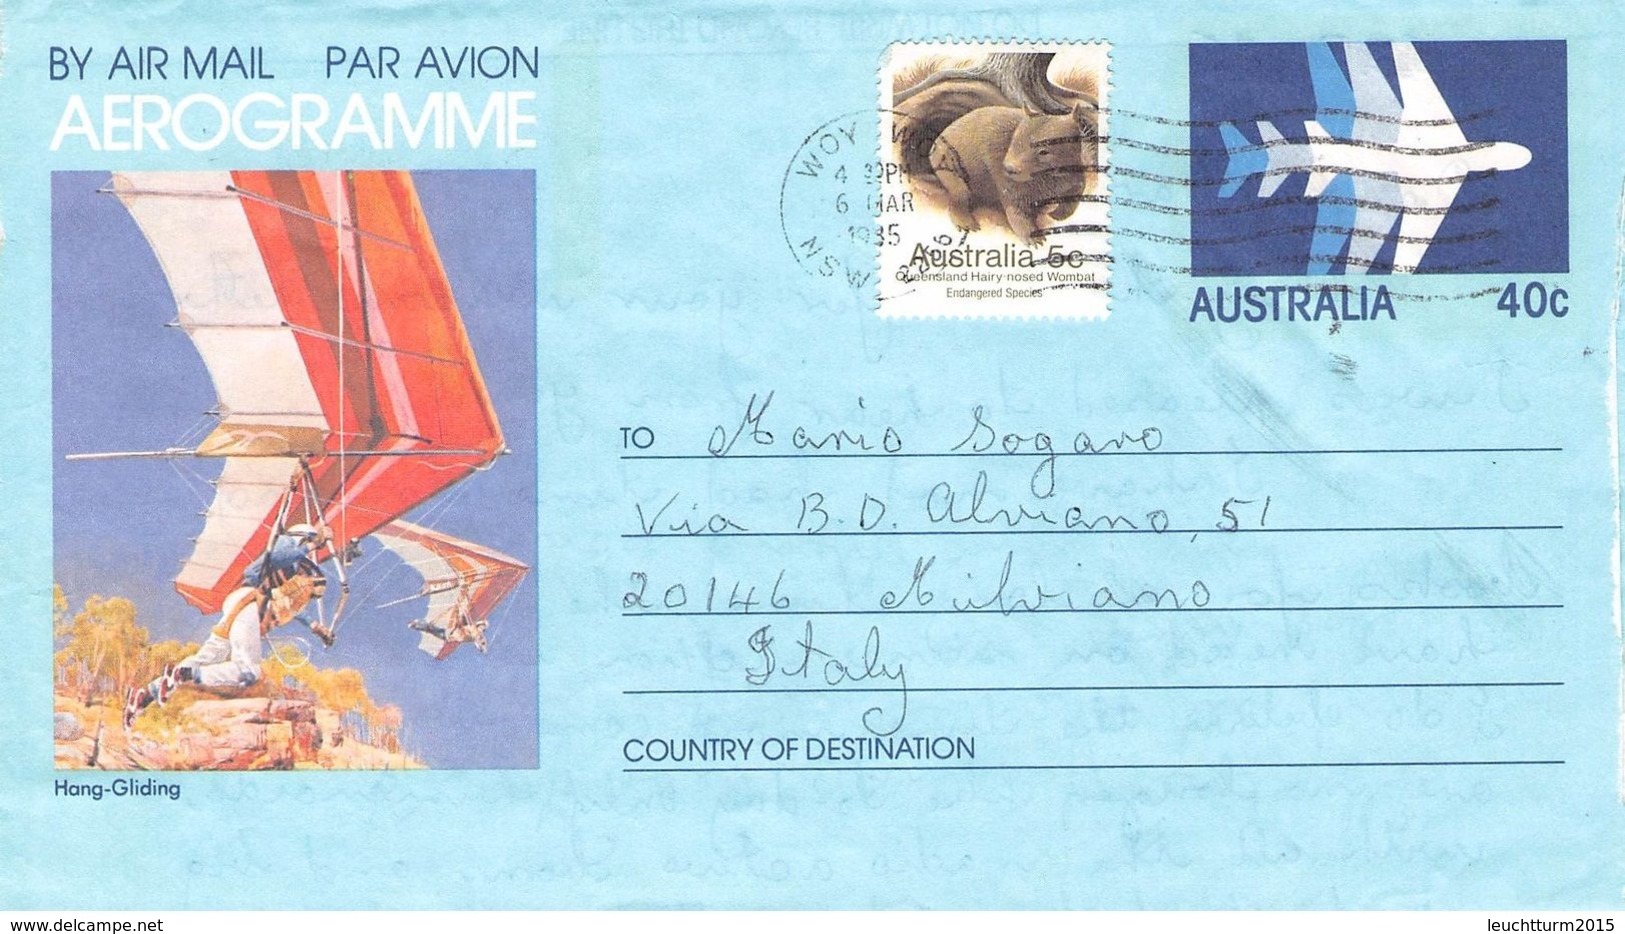 AUSTRALIA - AEROGRAMME 1985 - ITALY /ak996 - Aerograms